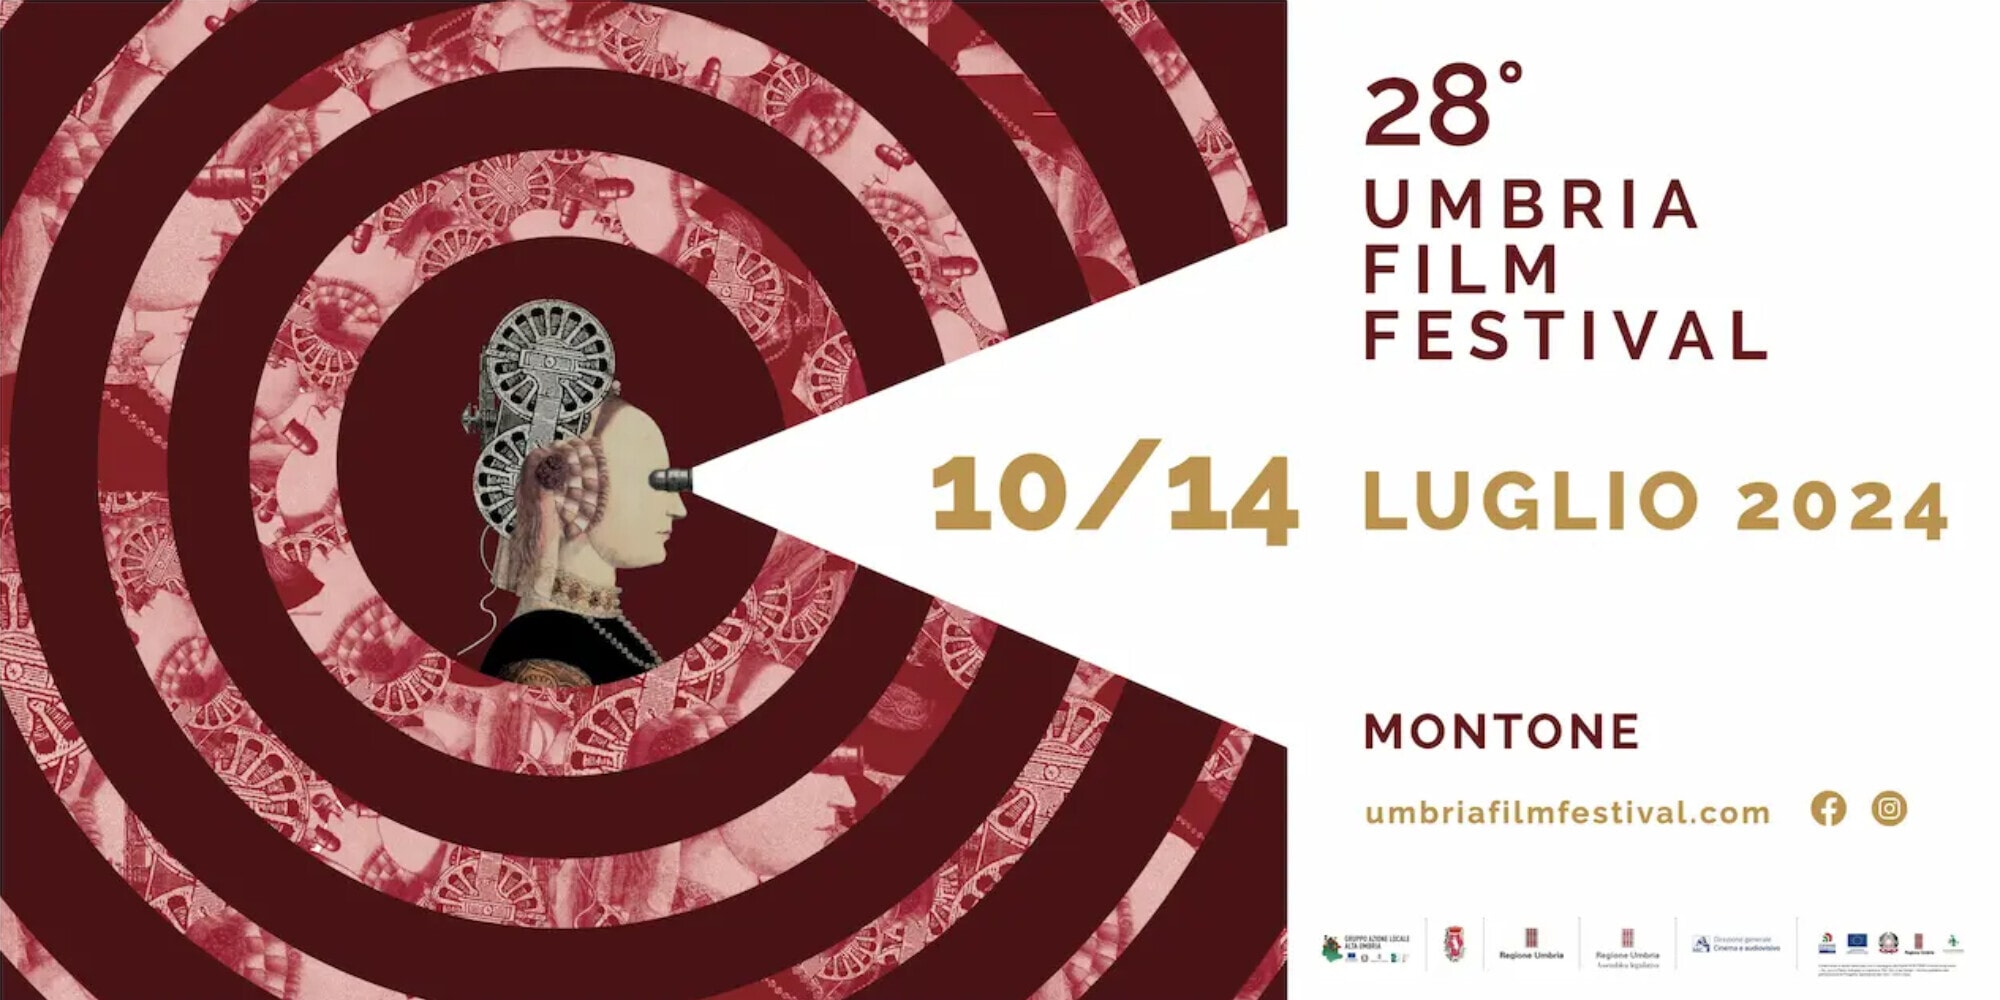 Indipendente, pop e intellettuale: le varie anime dell’Umbria Film Festival a Montone dal 10 al 14 luglio